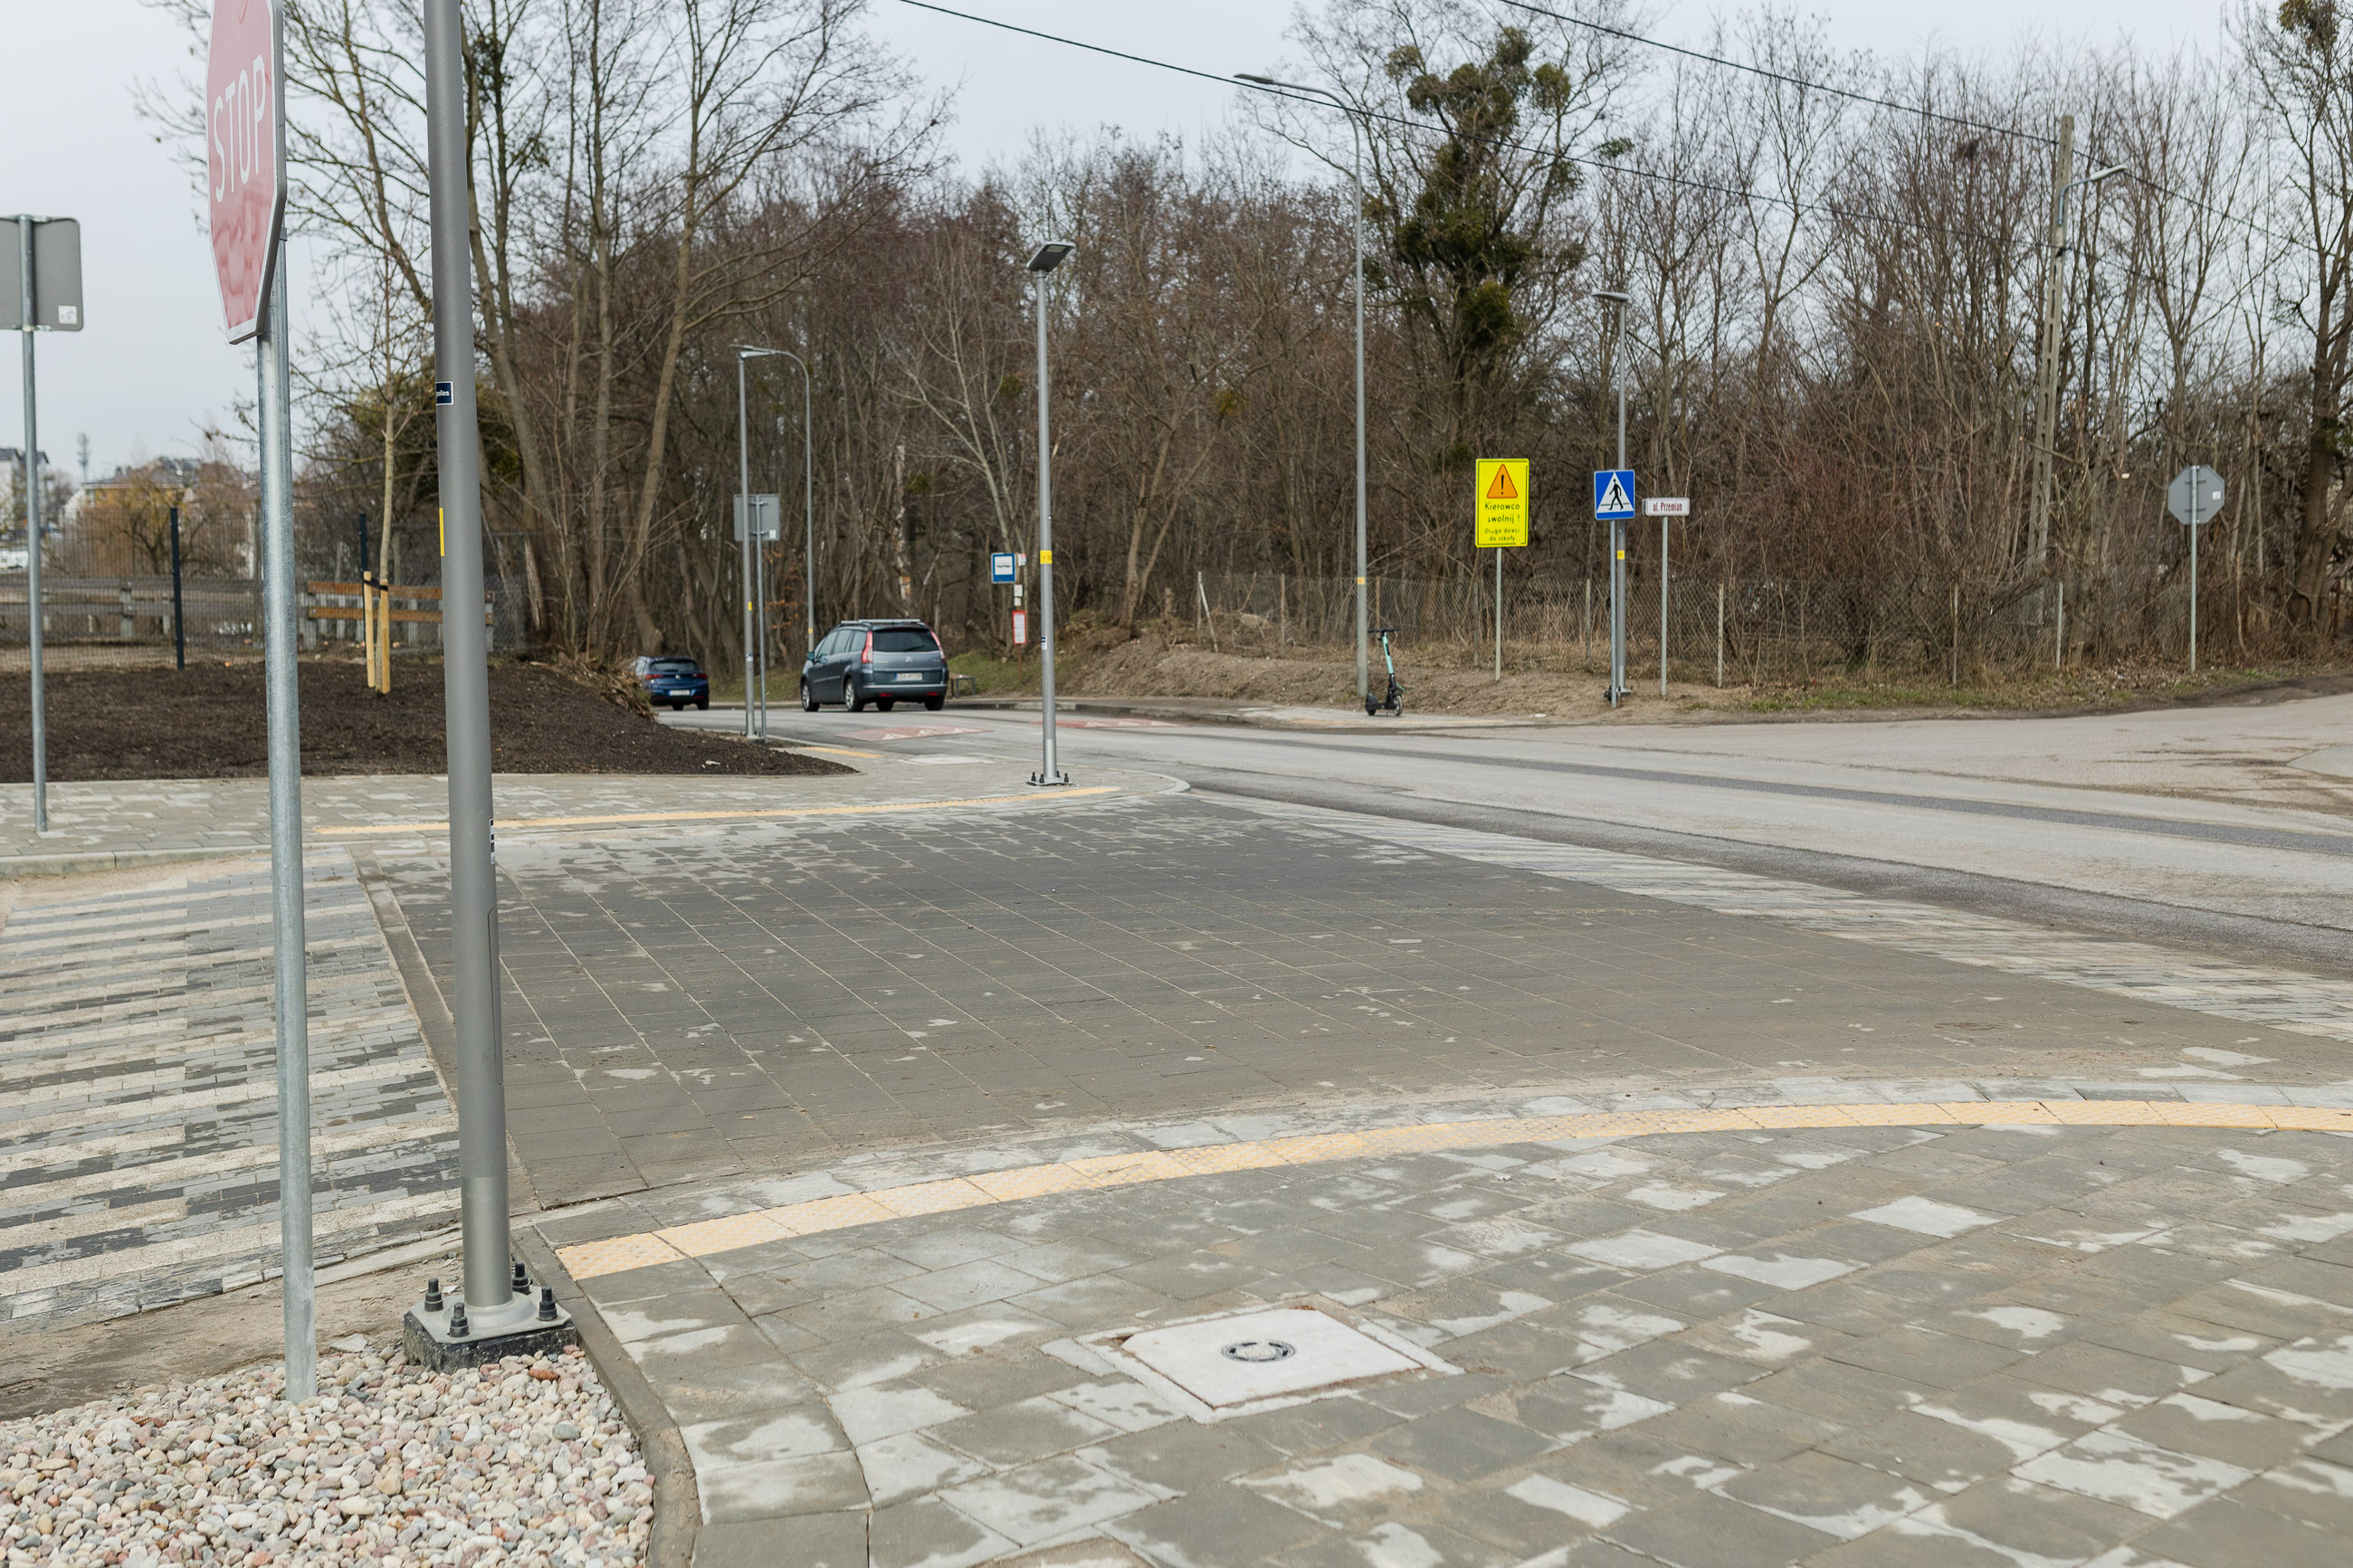 Zdjęcie przedstawia skrzyżowanie ulic Niepołomickiej i Przemian po wykonaniu inwestycji